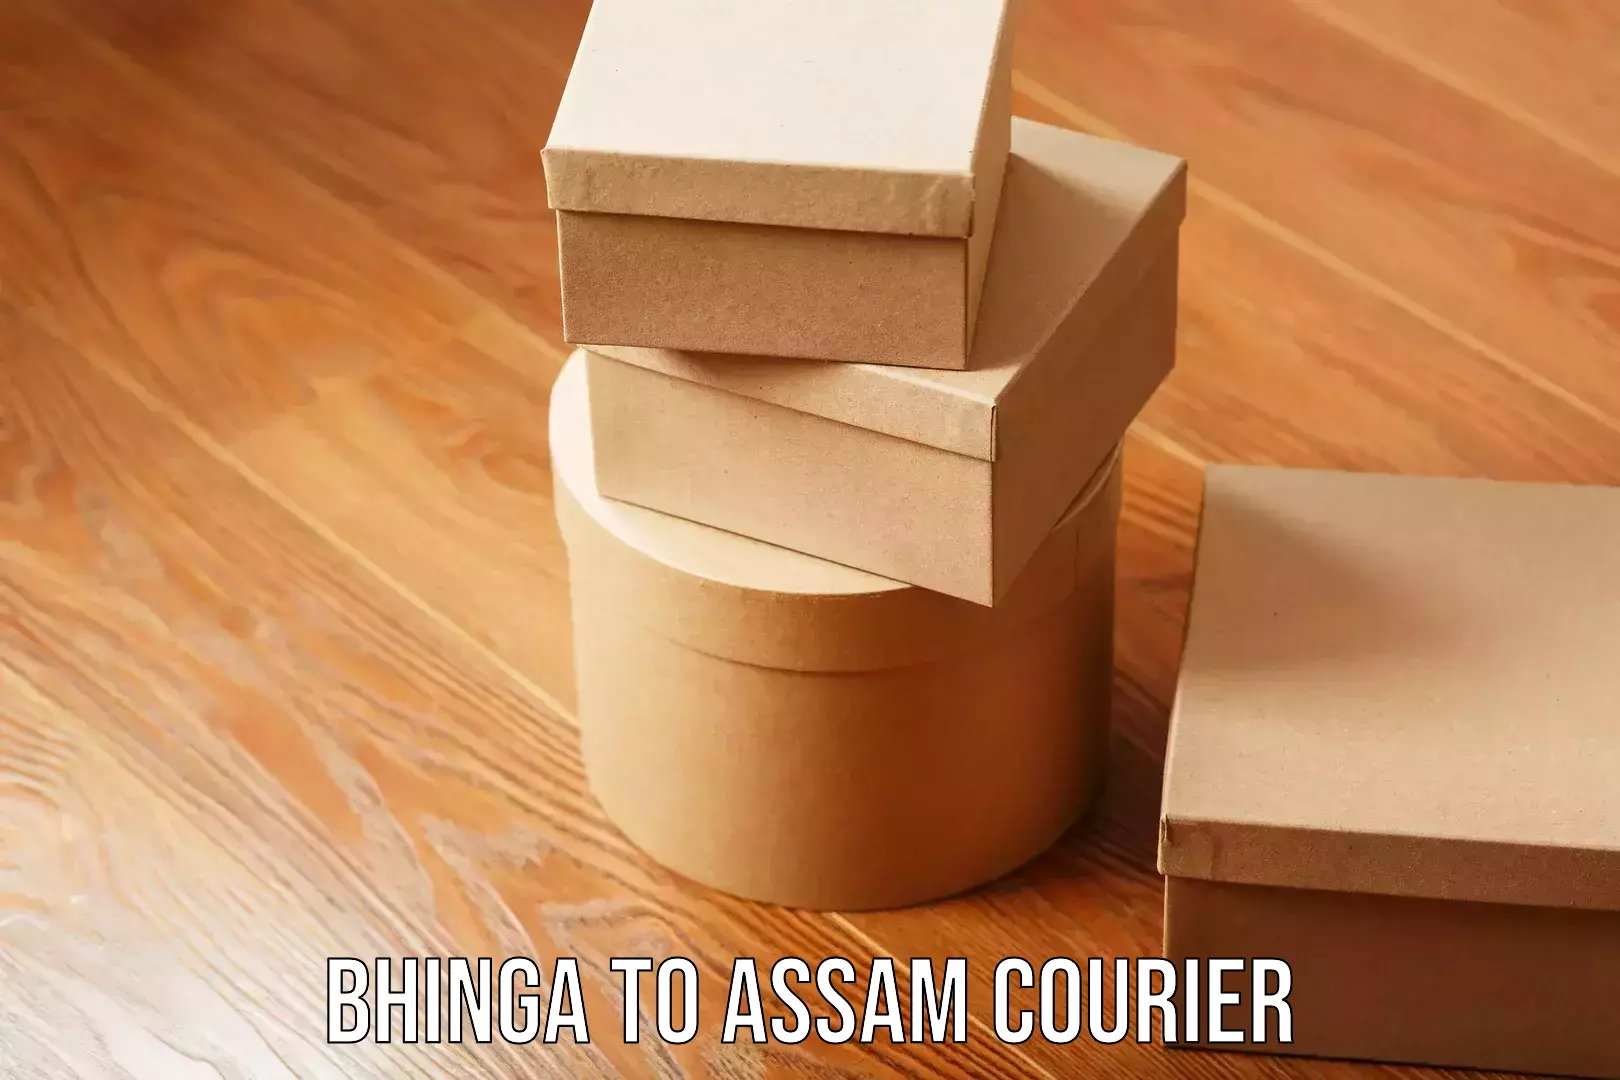 User-friendly courier app Bhinga to Assam